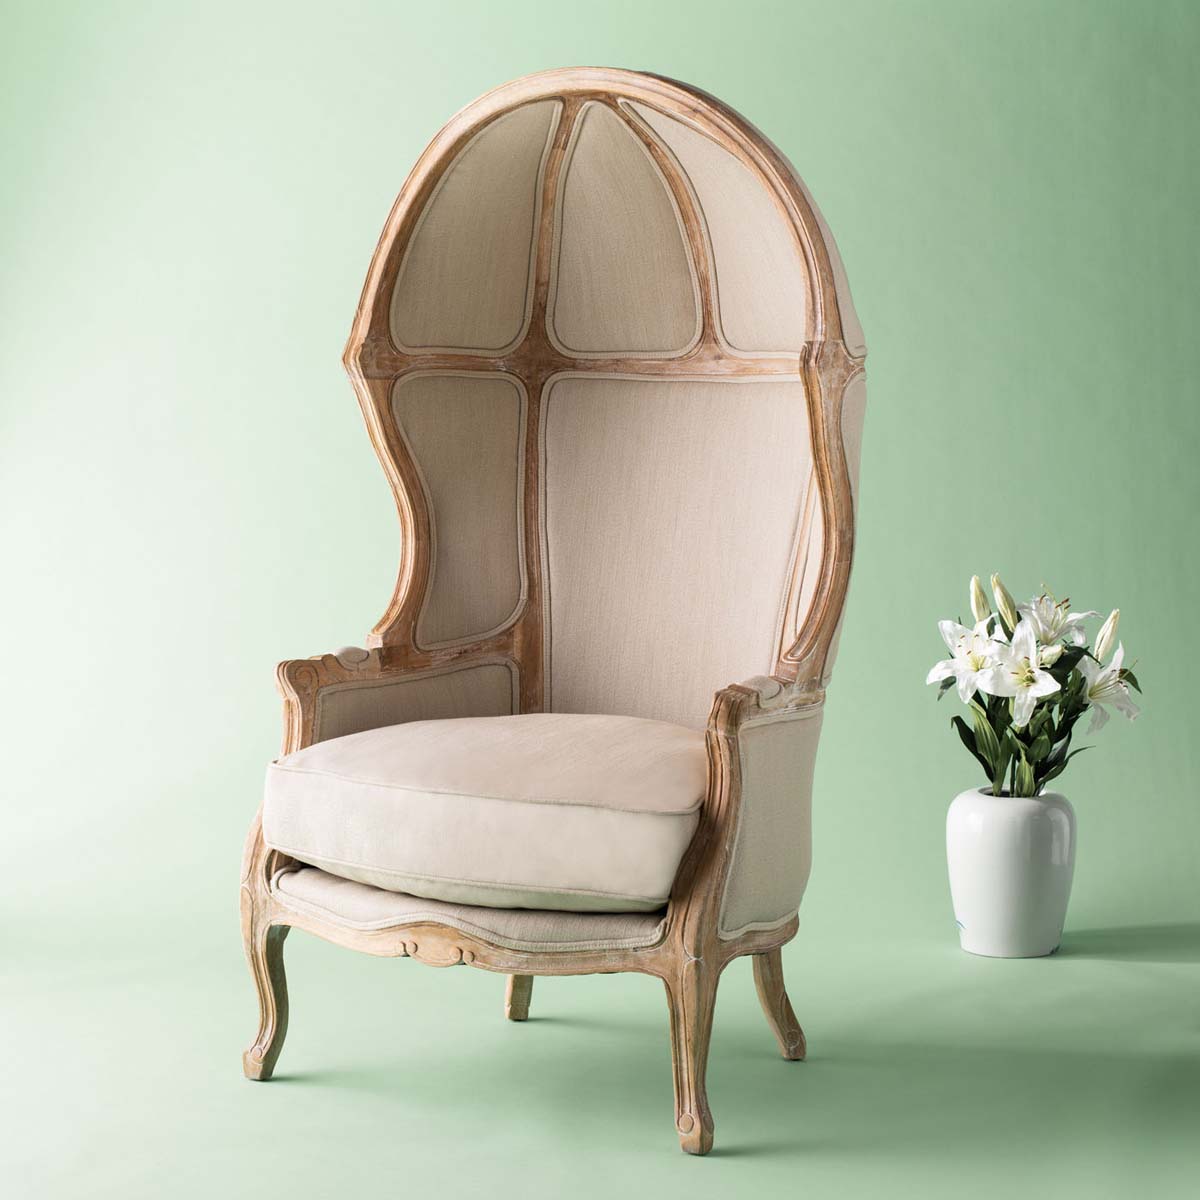 Safavieh Couture Sabine Natural Linen Balloon Chair , MCR4900